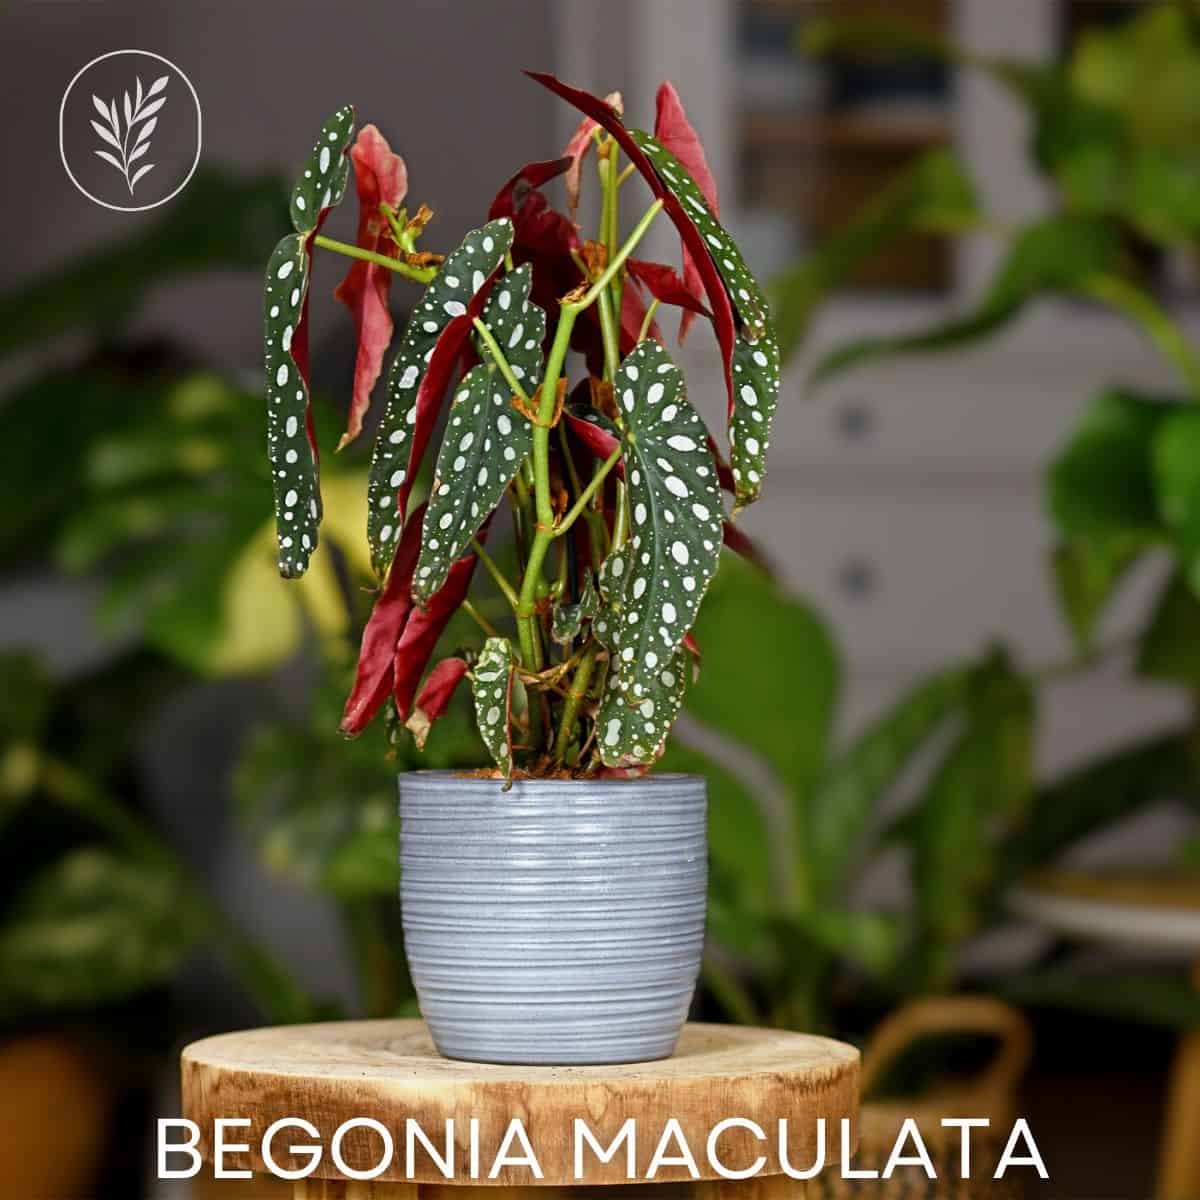 Begonia maculata via @home4theharvest